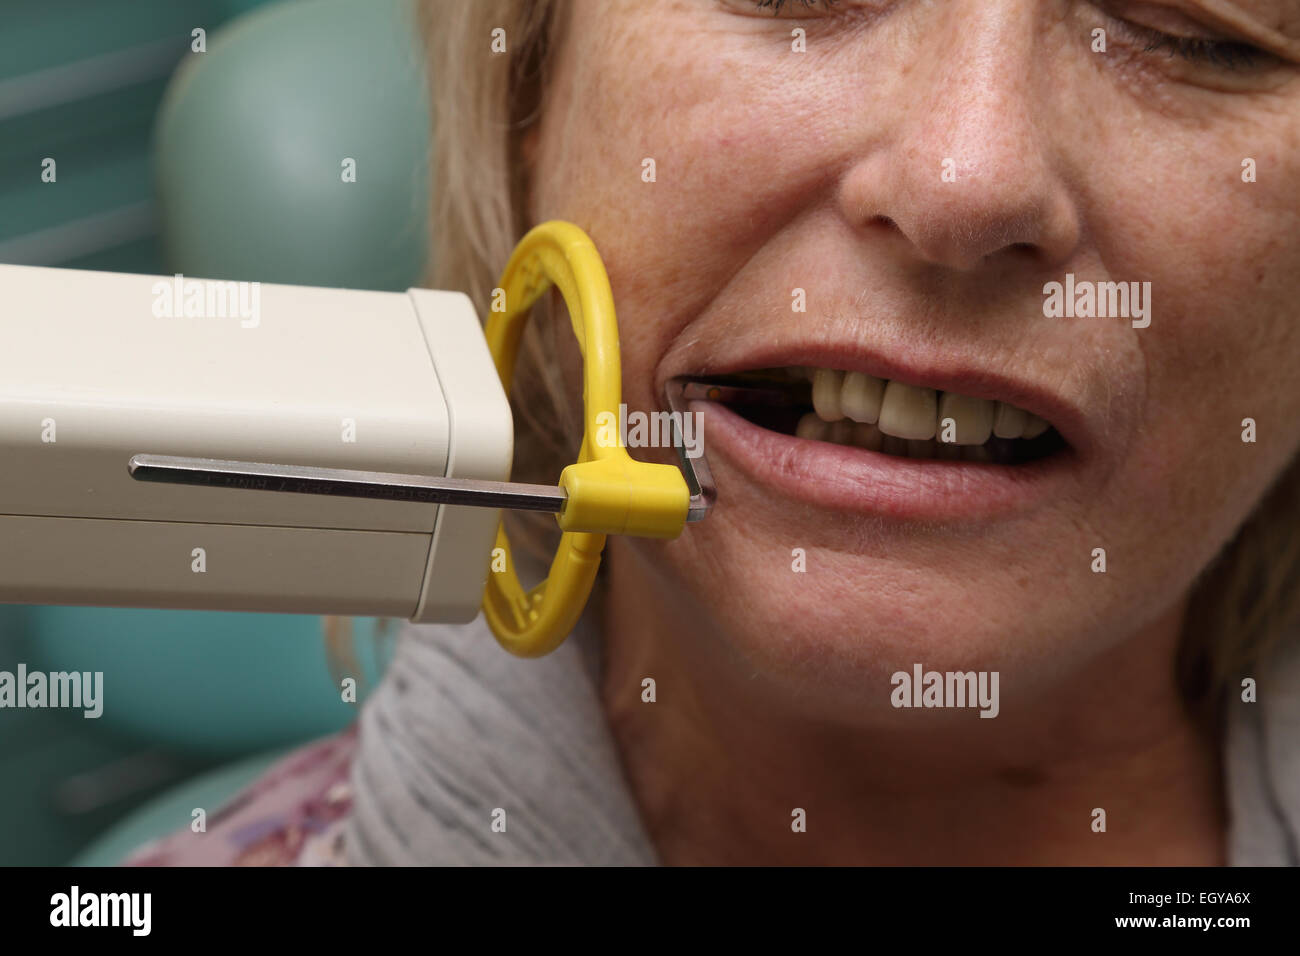 Frau beim Zahnarzt - Modell veröffentlicht Stockfoto